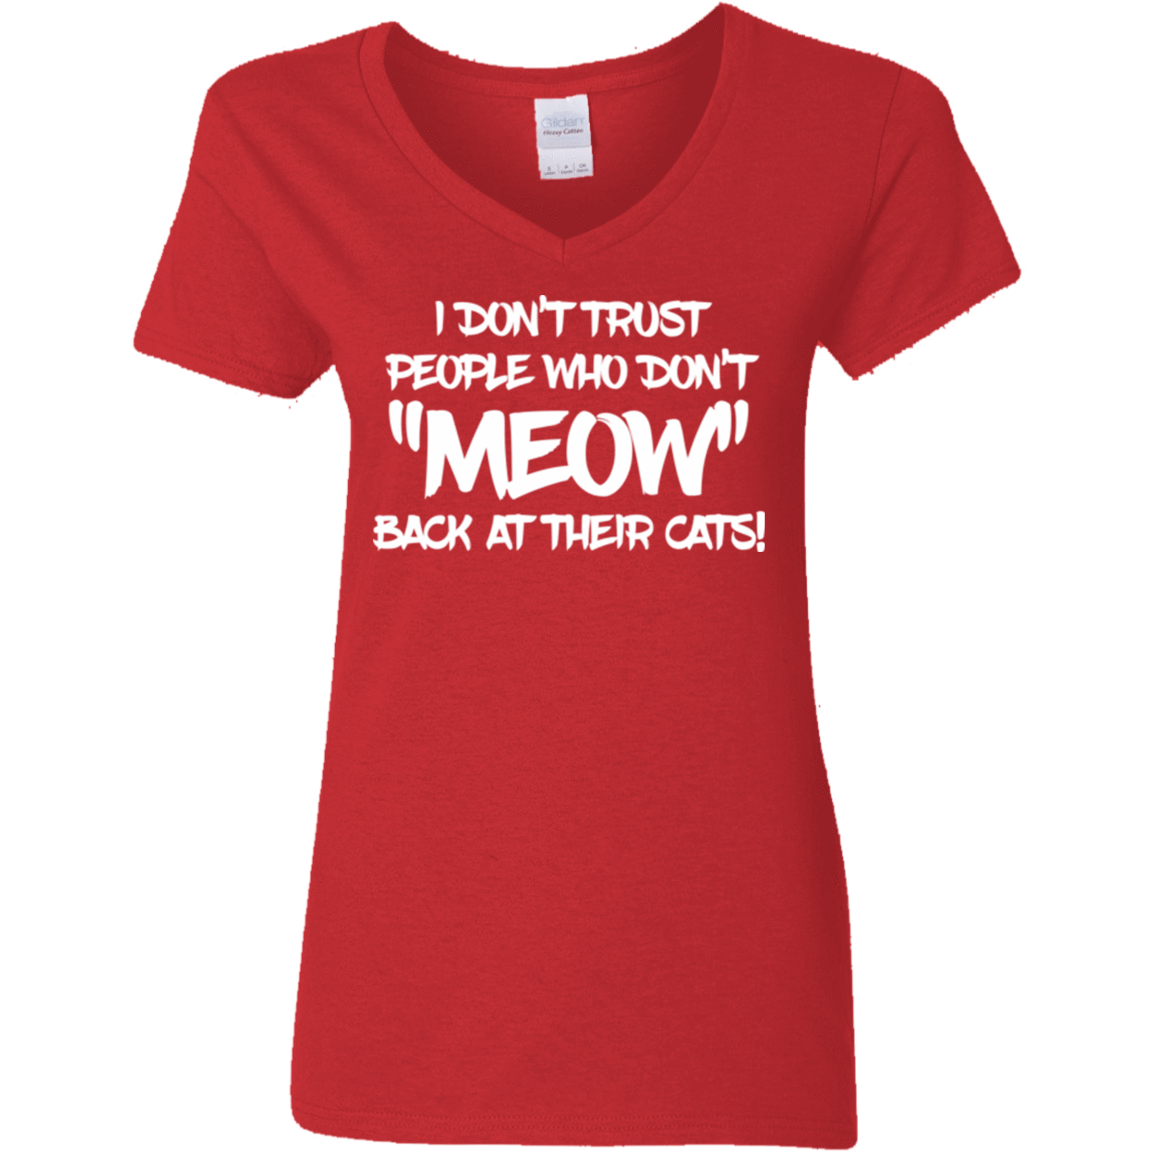 I Don't Trust Meow - Ladies V Neck.